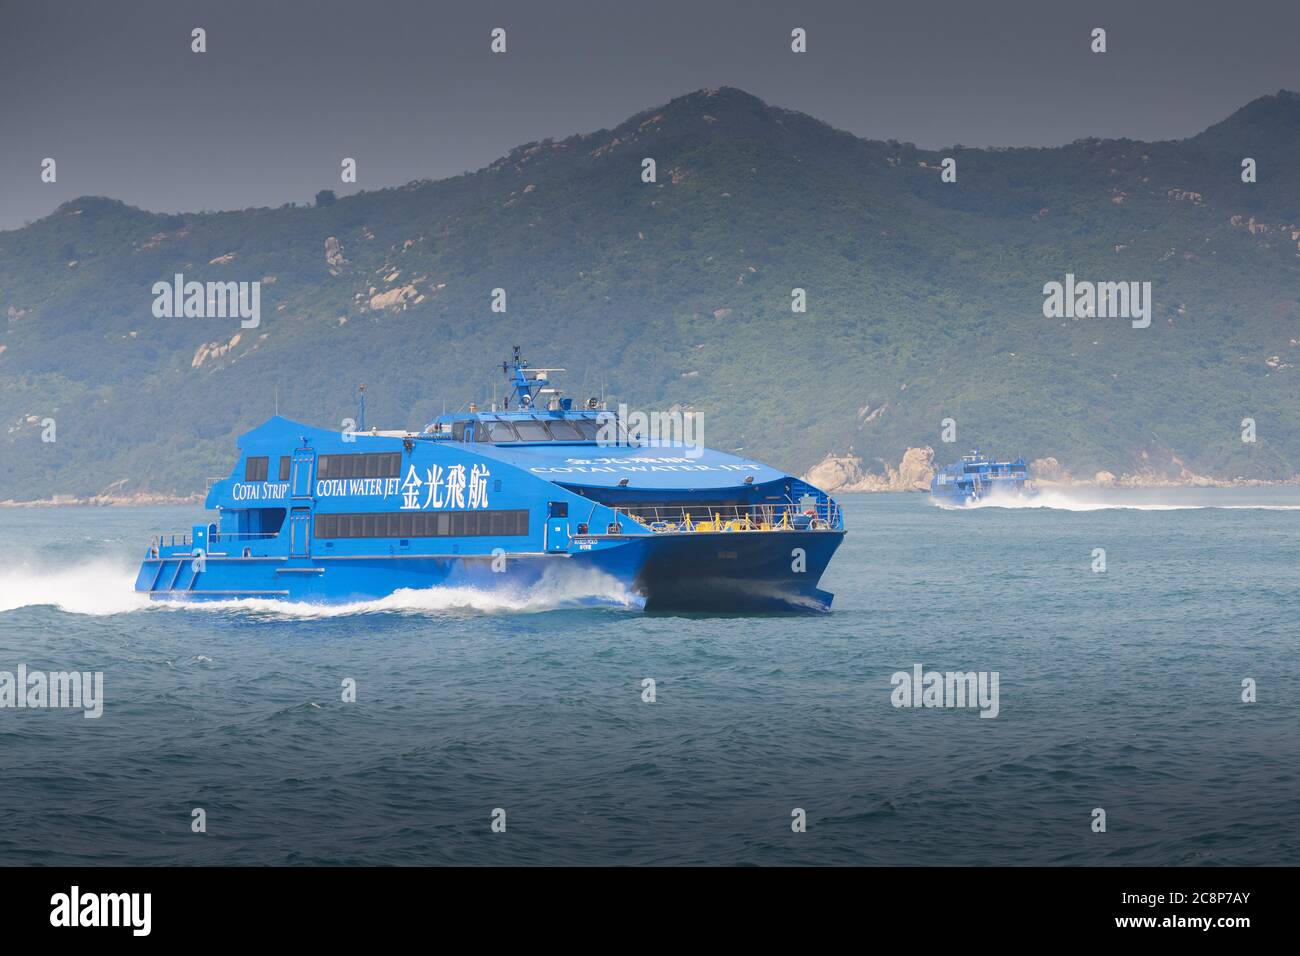 Cotai Water Jet, AUSTAL 48, MARCO POLO, traghetto ad alta velocità in rotta da Macao a Hong Kong. Foto Stock